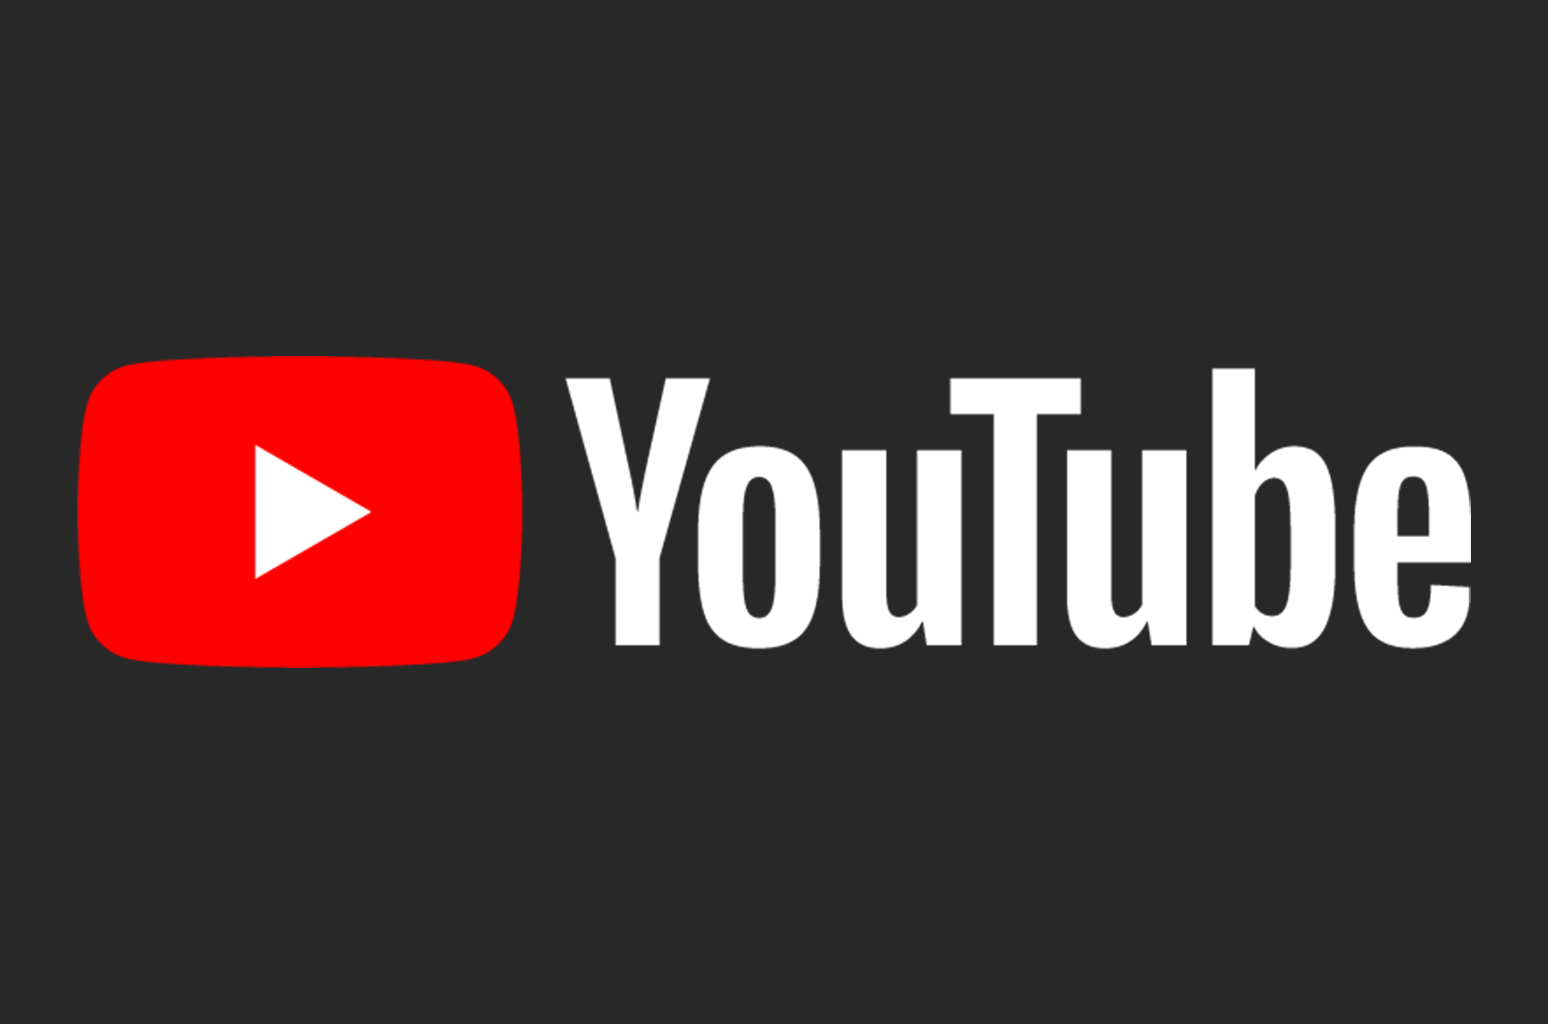 Сейчас Индия является одним из крупнейших рынков для YouTube. 